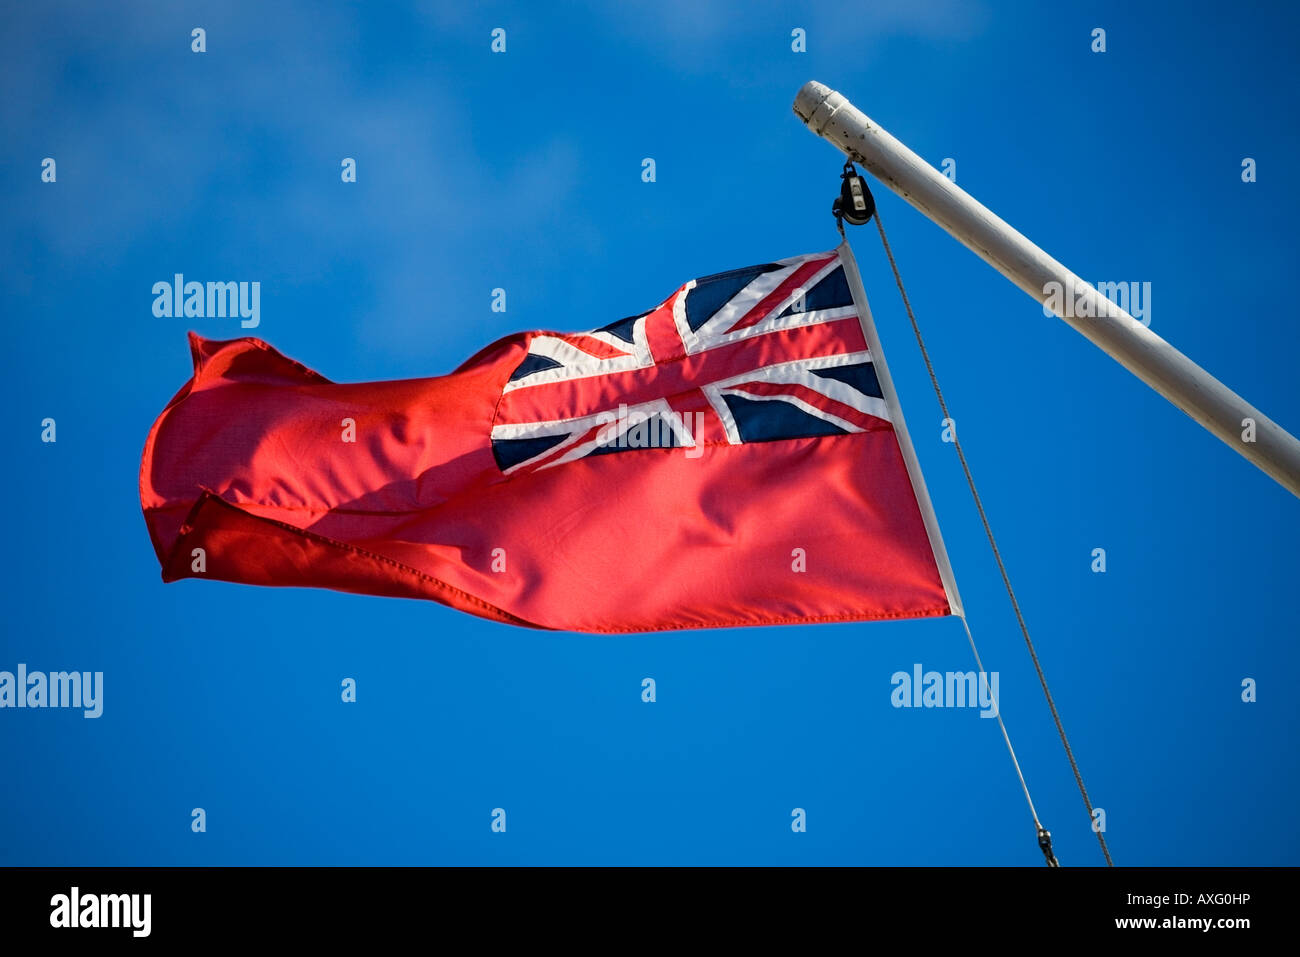 gerningsmanden Arbejdsgiver Mod viljen British red ensign flag hi-res stock photography and images - Alamy